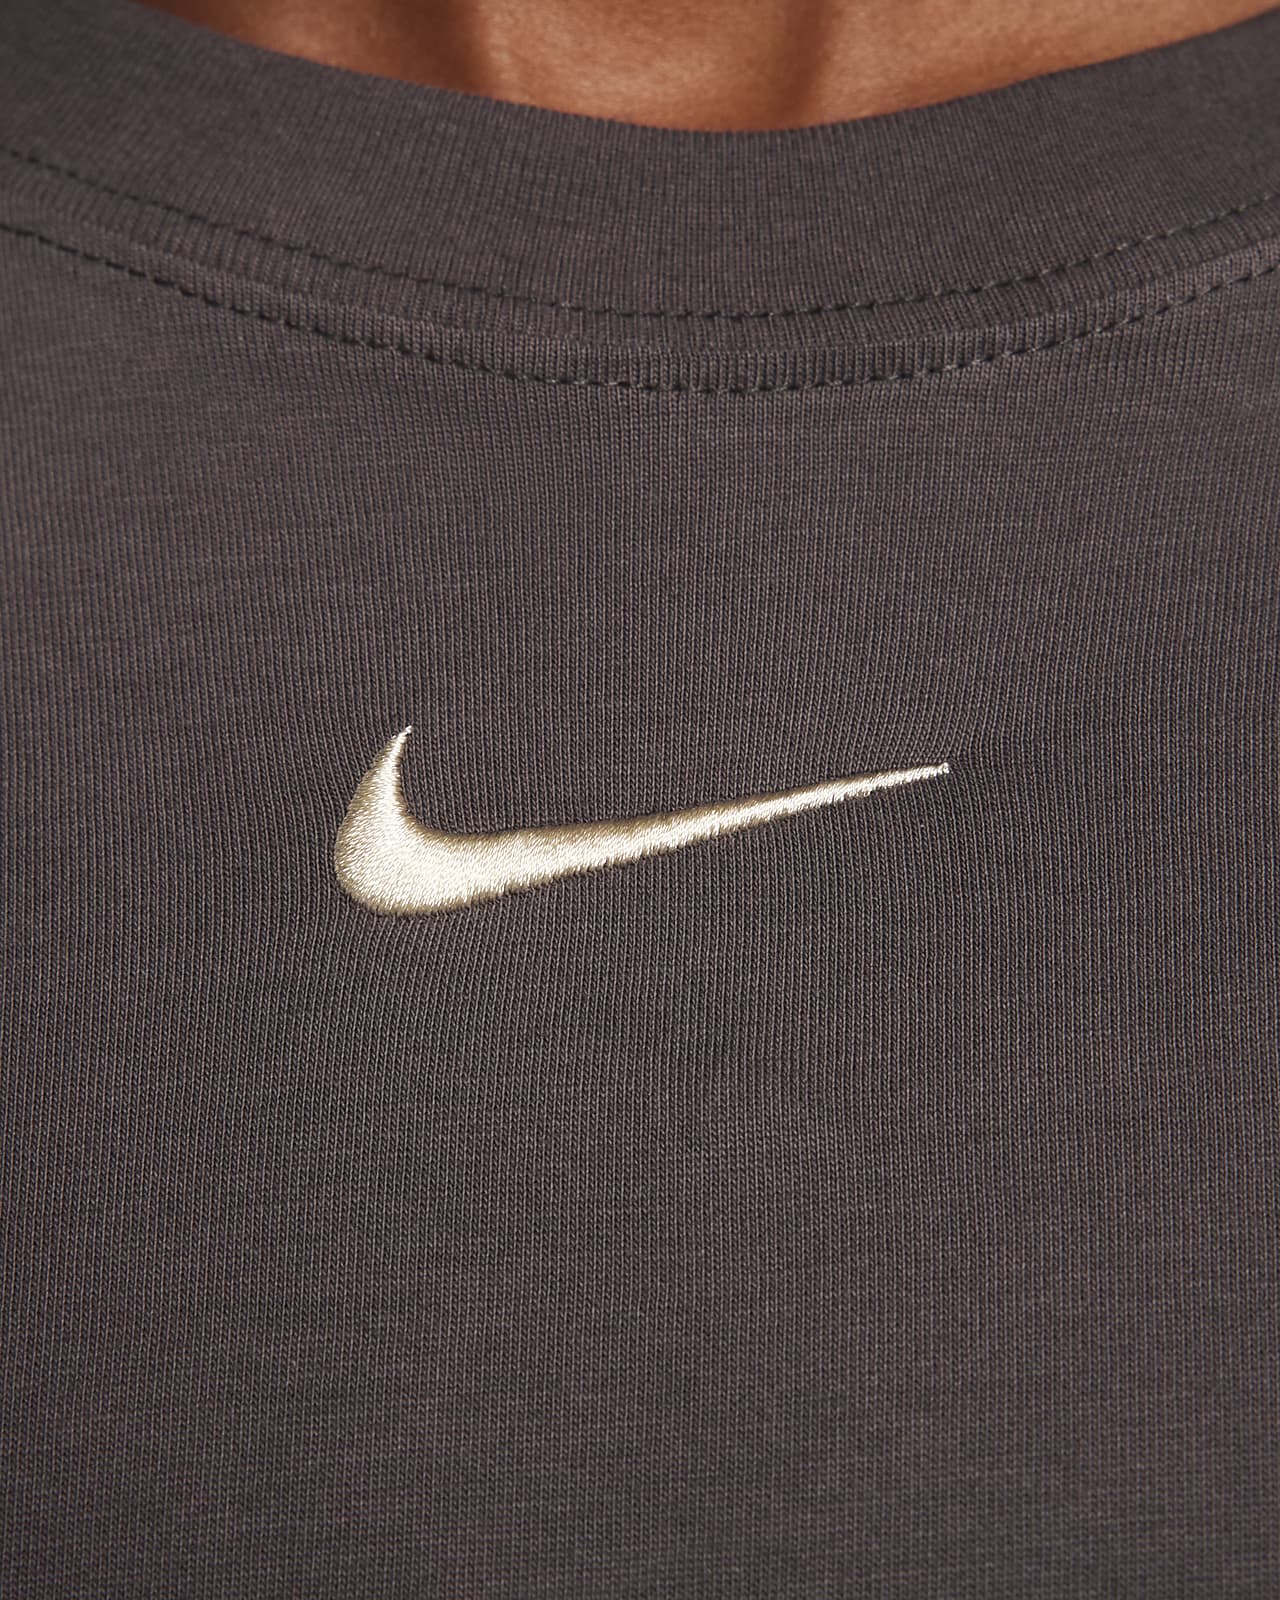 Nike Sportswear Women's Ribbed Jersey Long-Sleeve Top. Nike CA